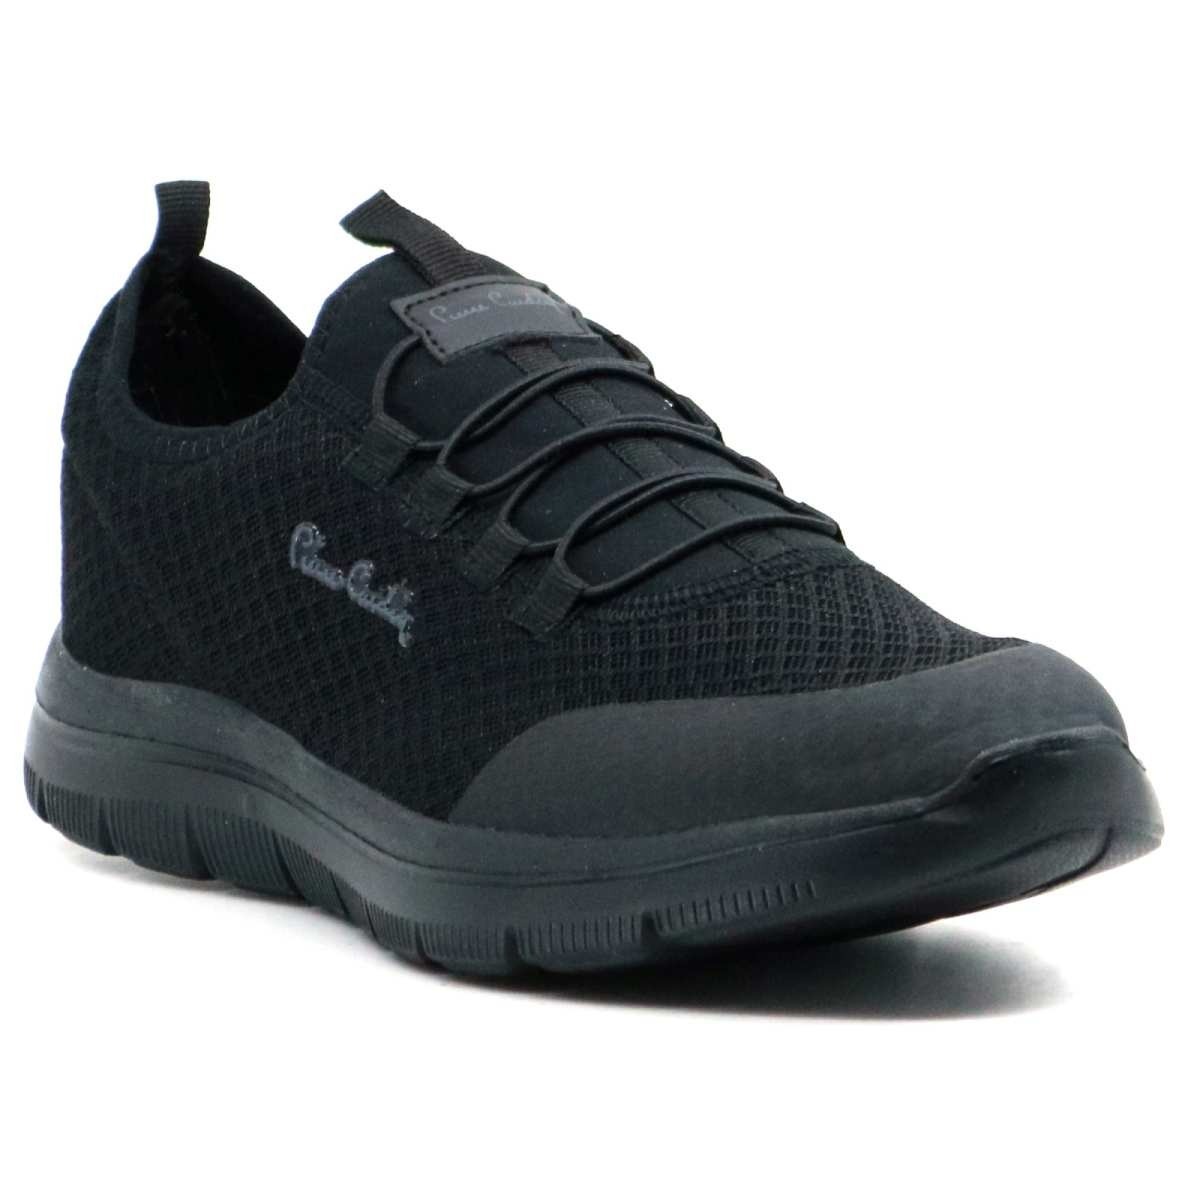 Flo 10149 Günlük Sneakers Erkek Spor Ayakkabı Siyah. 2